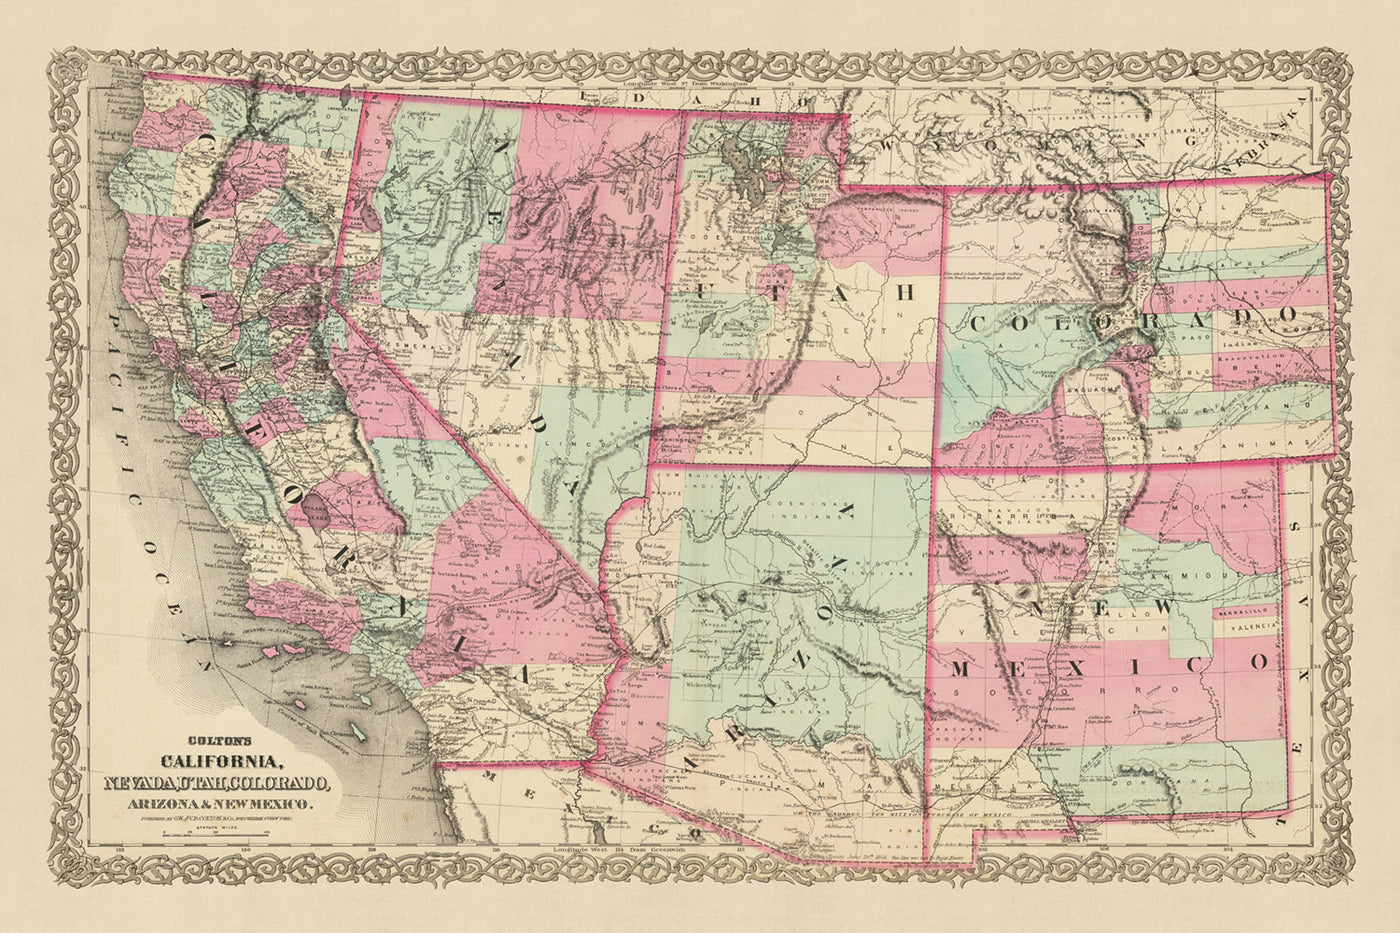 Mapa antiguo del oeste de los Estados Unidos por JH Colton, 1871: San Francisco, Salt Lake City, Denver, Tucson y Santa Fe